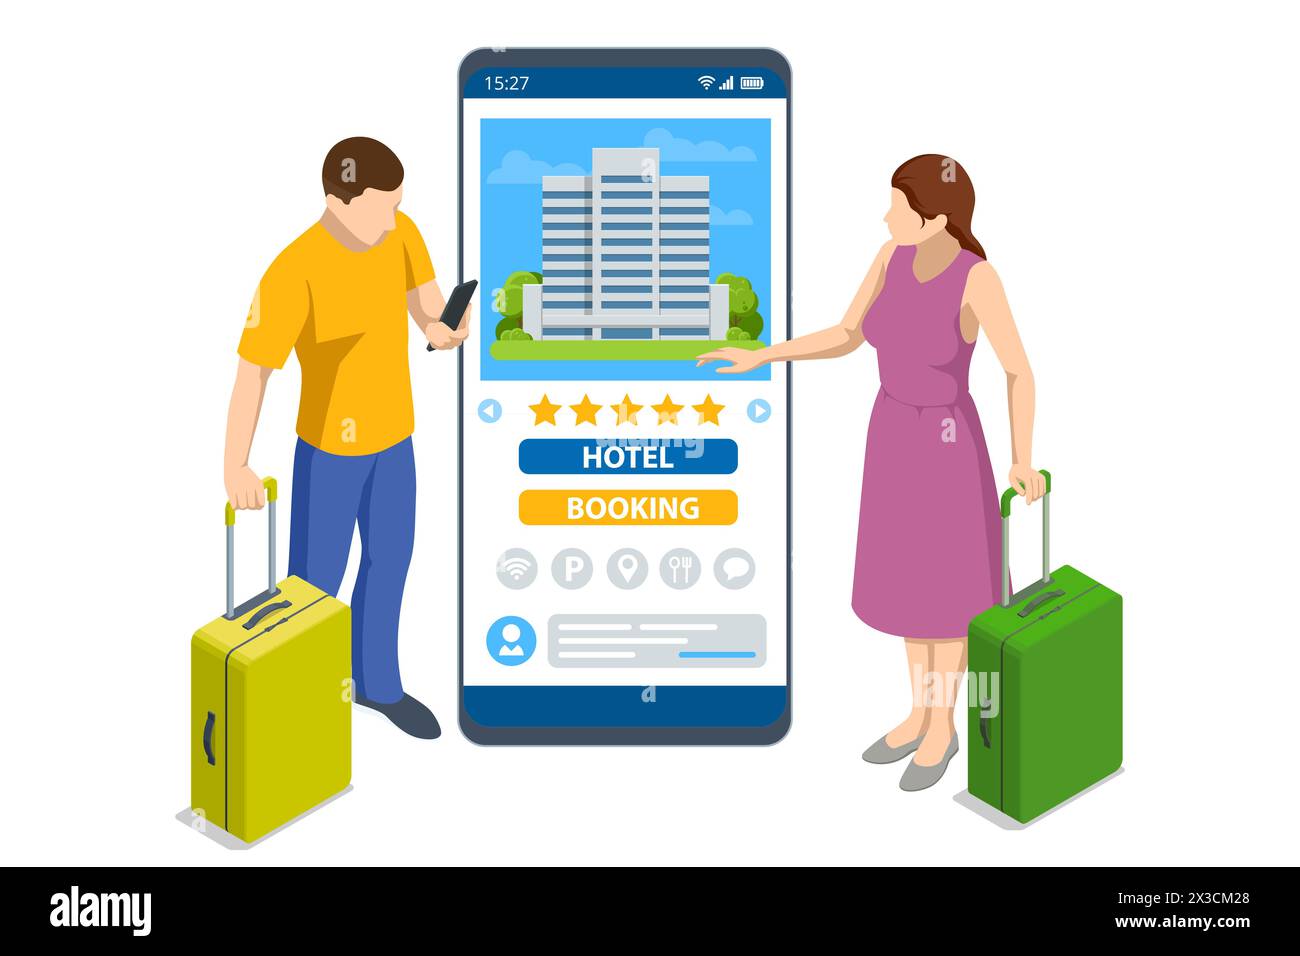 Isometrische Online-Buchungsanwendung. Ticketkauf mit Smartphone. Leute buchen Hotel und suchen Reservierungen für Urlaub. Smartphone-Karten Stock Vektor